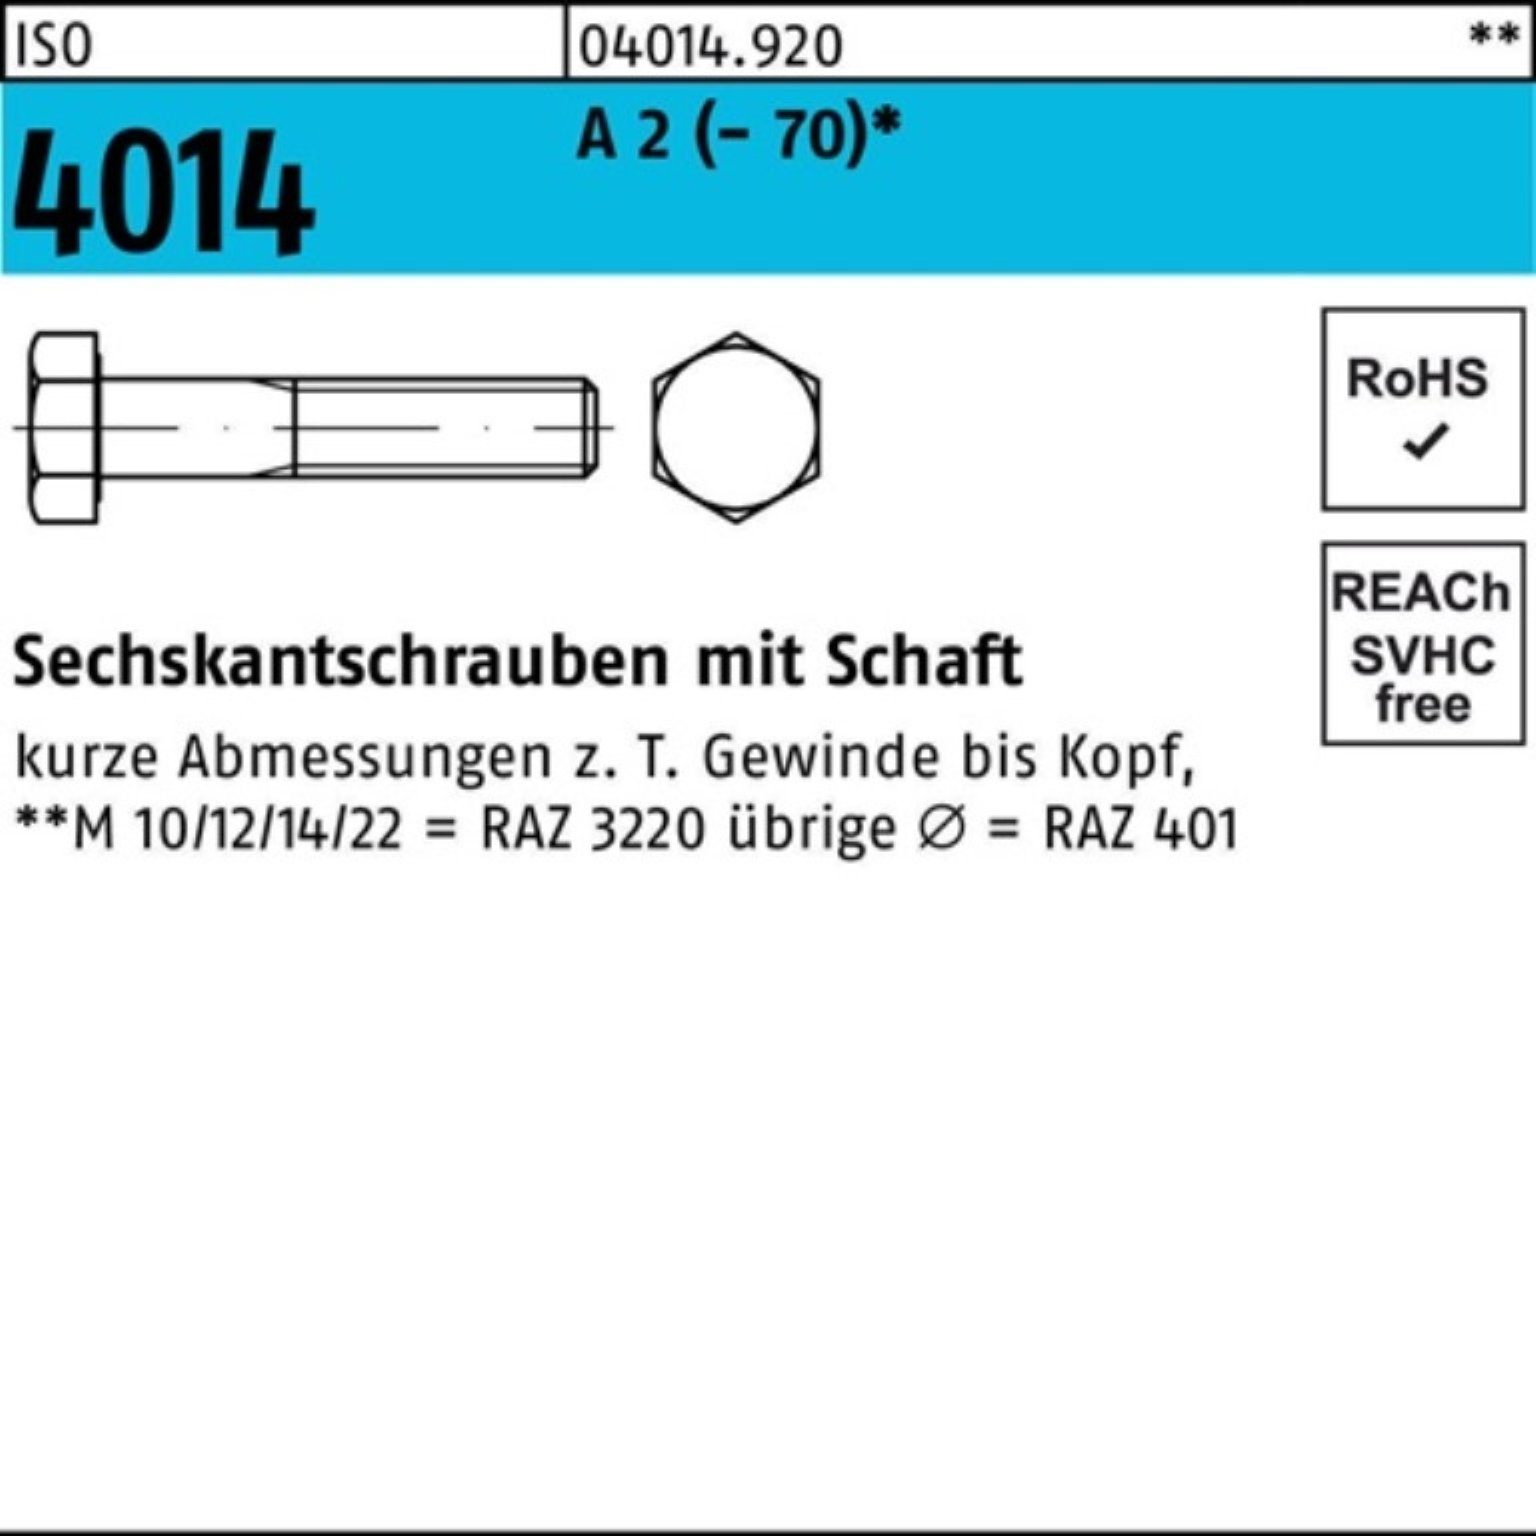 Bufab Sechskantschraube 100er Pack Sechskantschraube ISO 4014 Schaft M12x 260 A 2 (70) 1 St